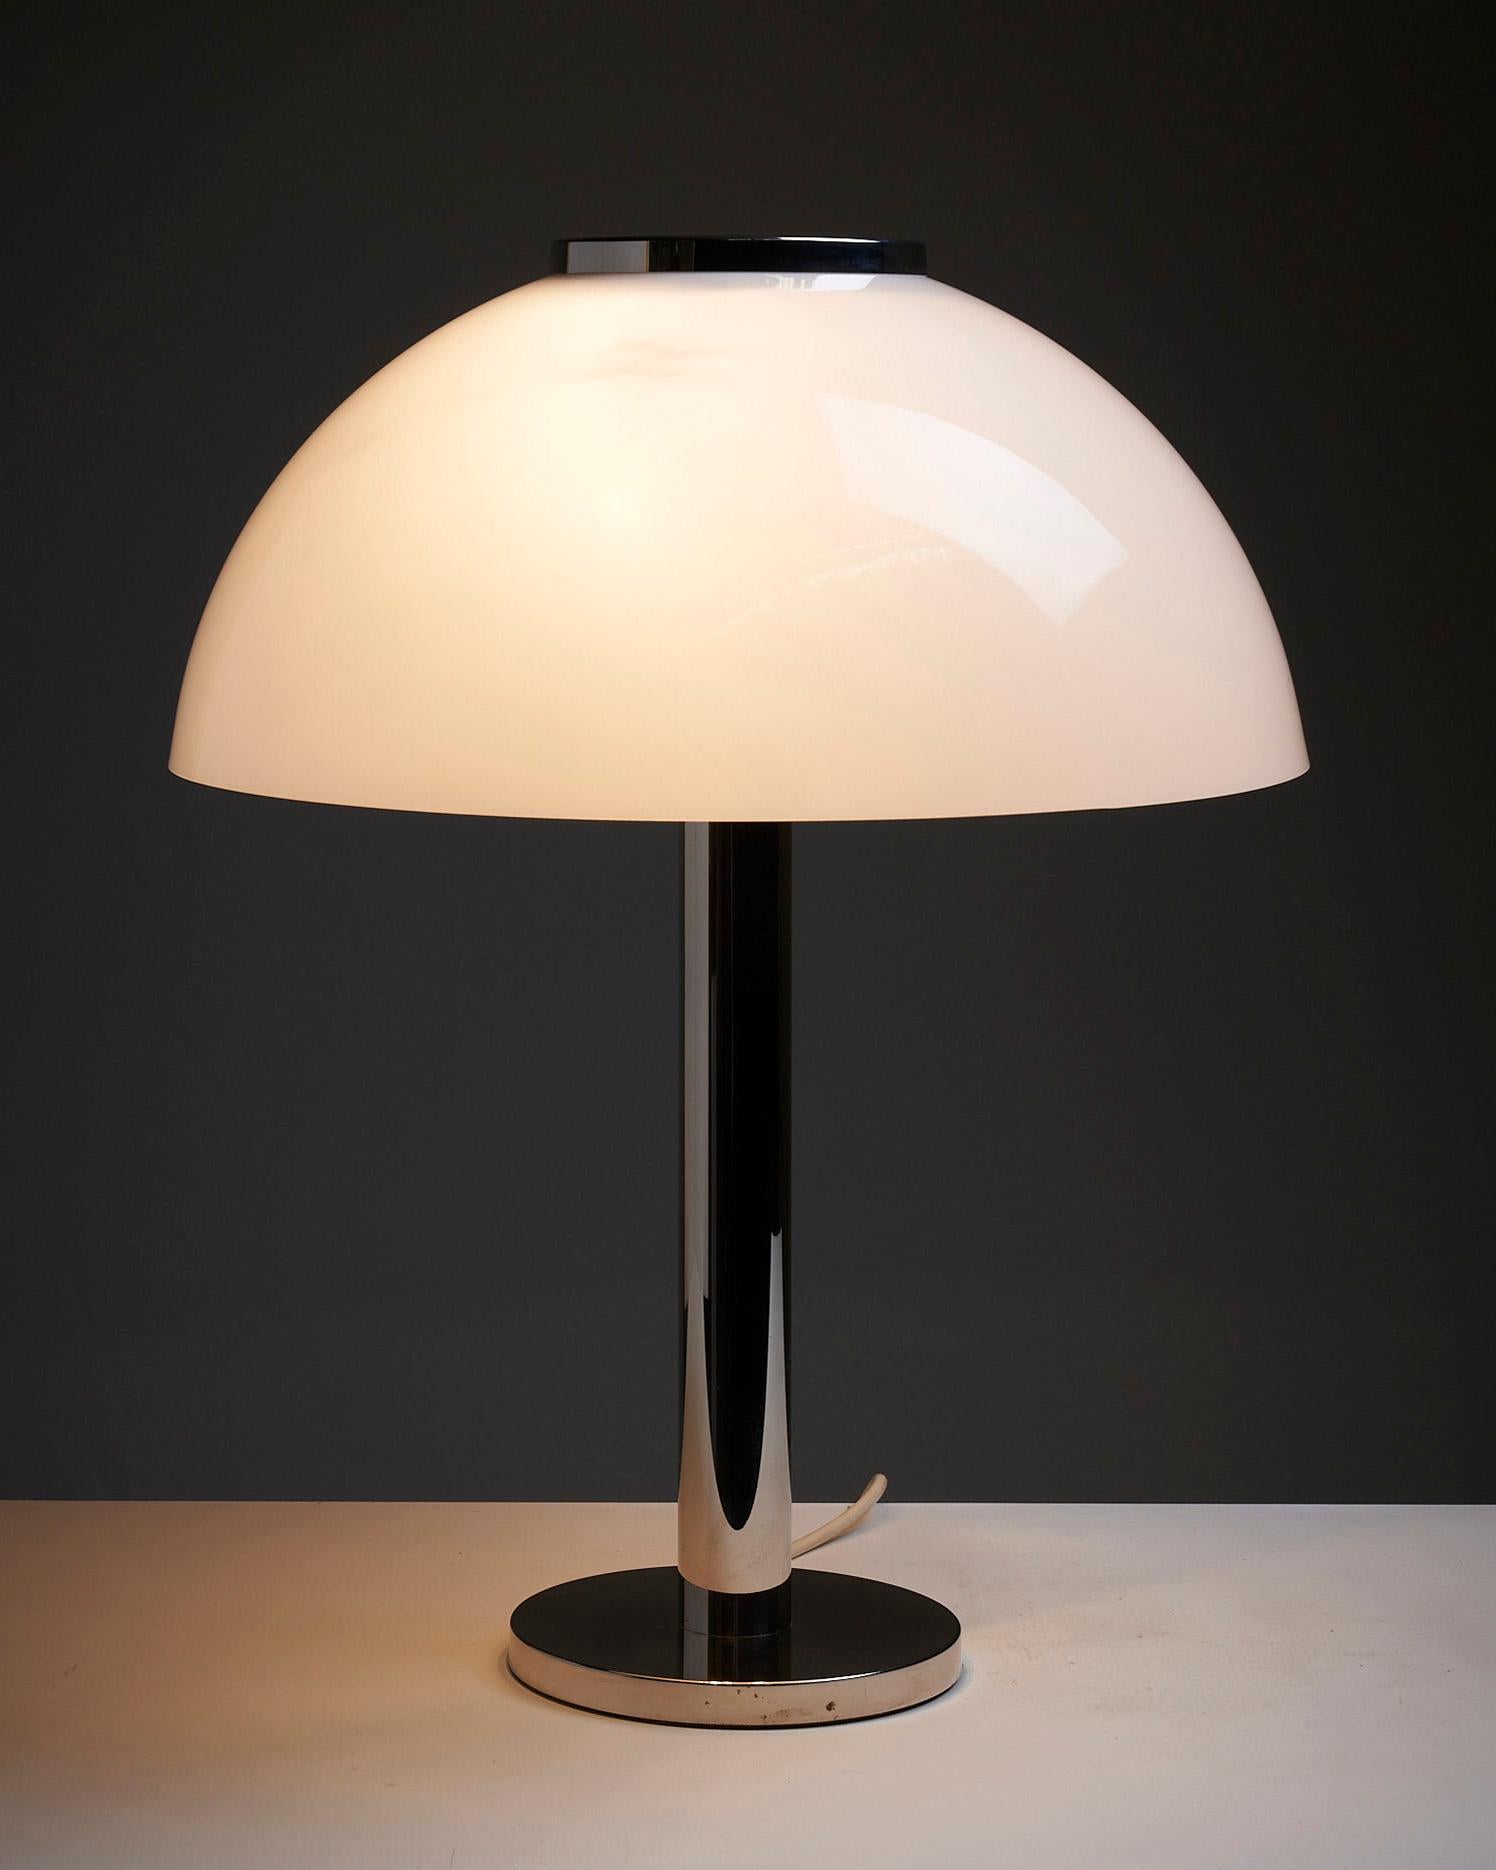 Illuminez votre espace avec la lampe de table Dome, élégante et raffinée, de Beisl Leuchten. Cette lampe de conception allemande combine une base et une tige chromées scintillantes, dégageant une touche de sophistication et d'élégance moderne.

Au